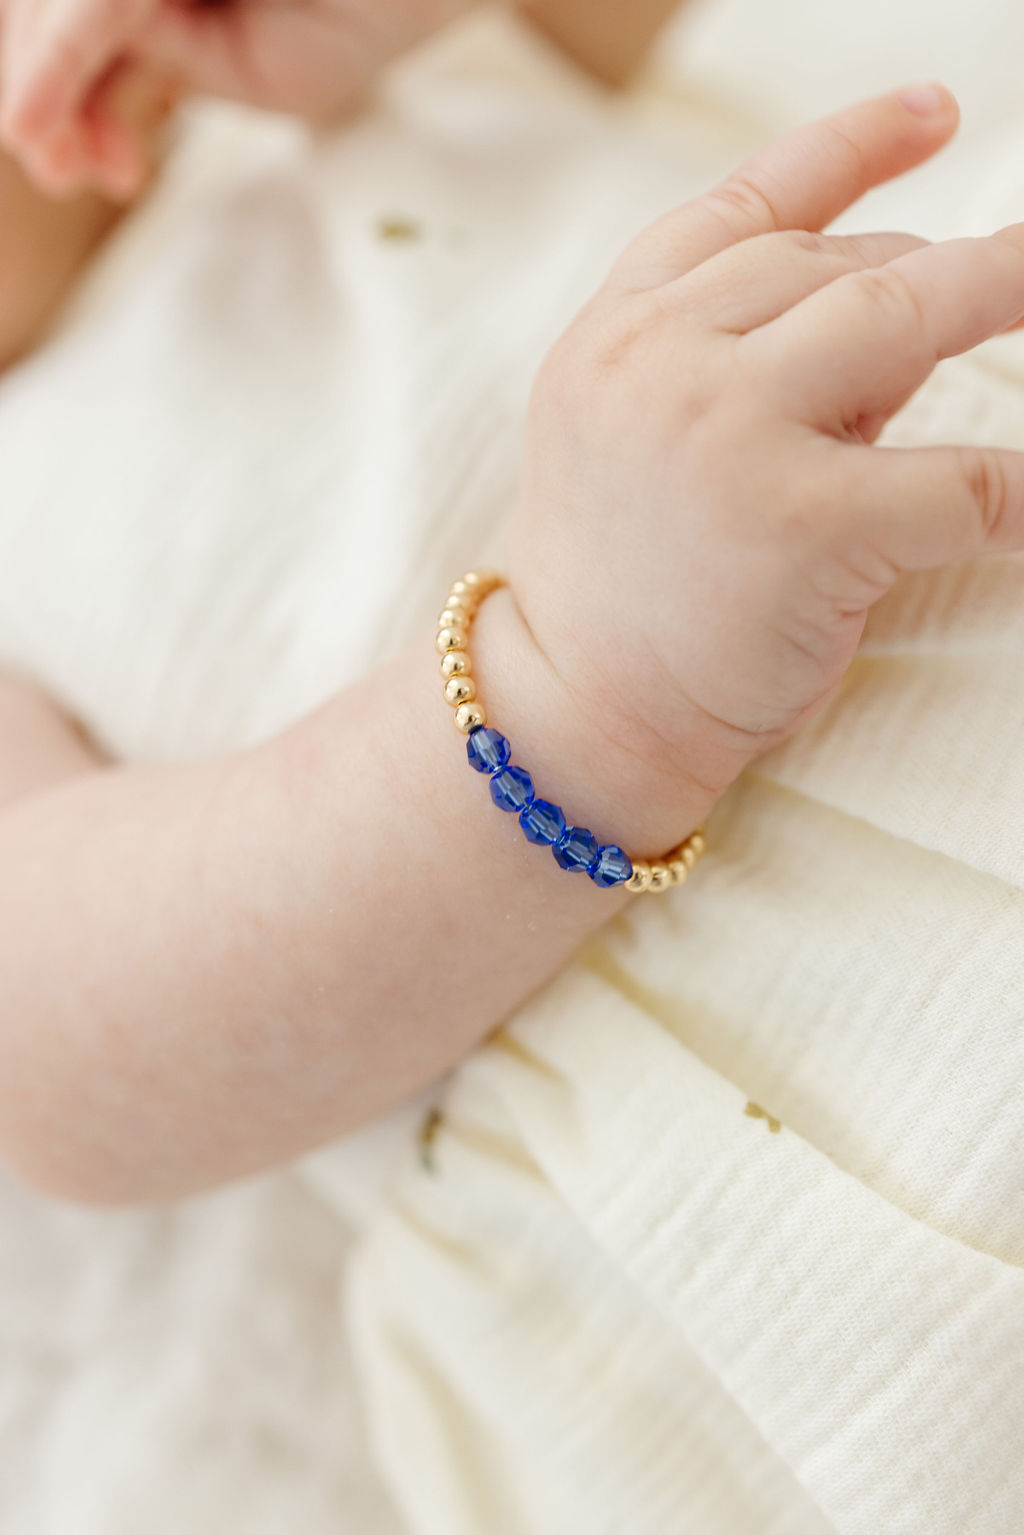 September Birthstone Mom + Mini Bracelet Set (4MM Beads)